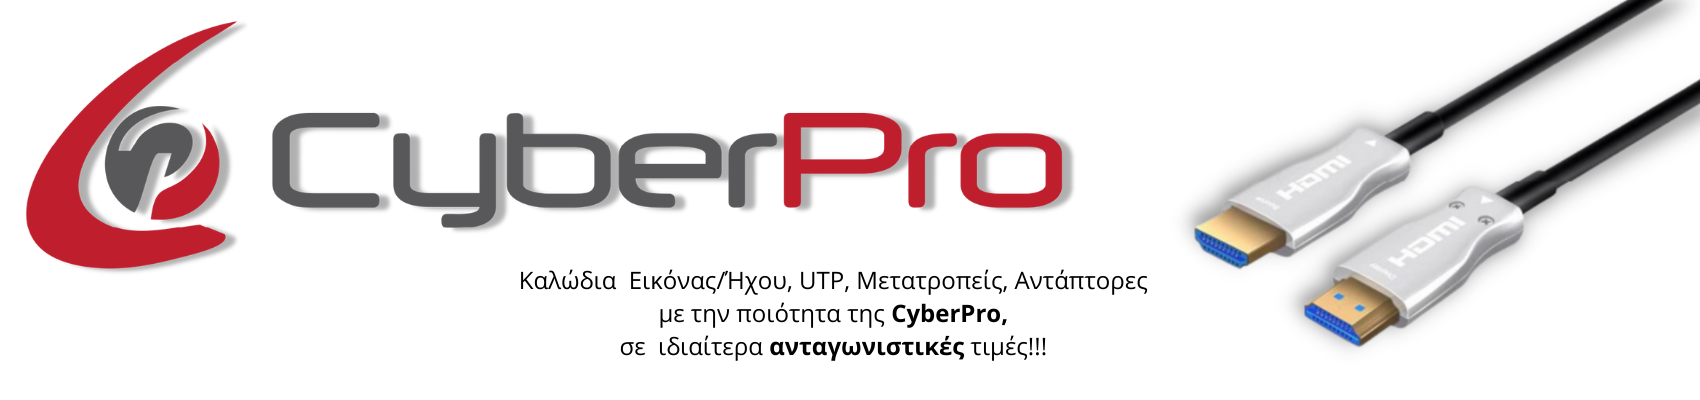 CyberPro Technology